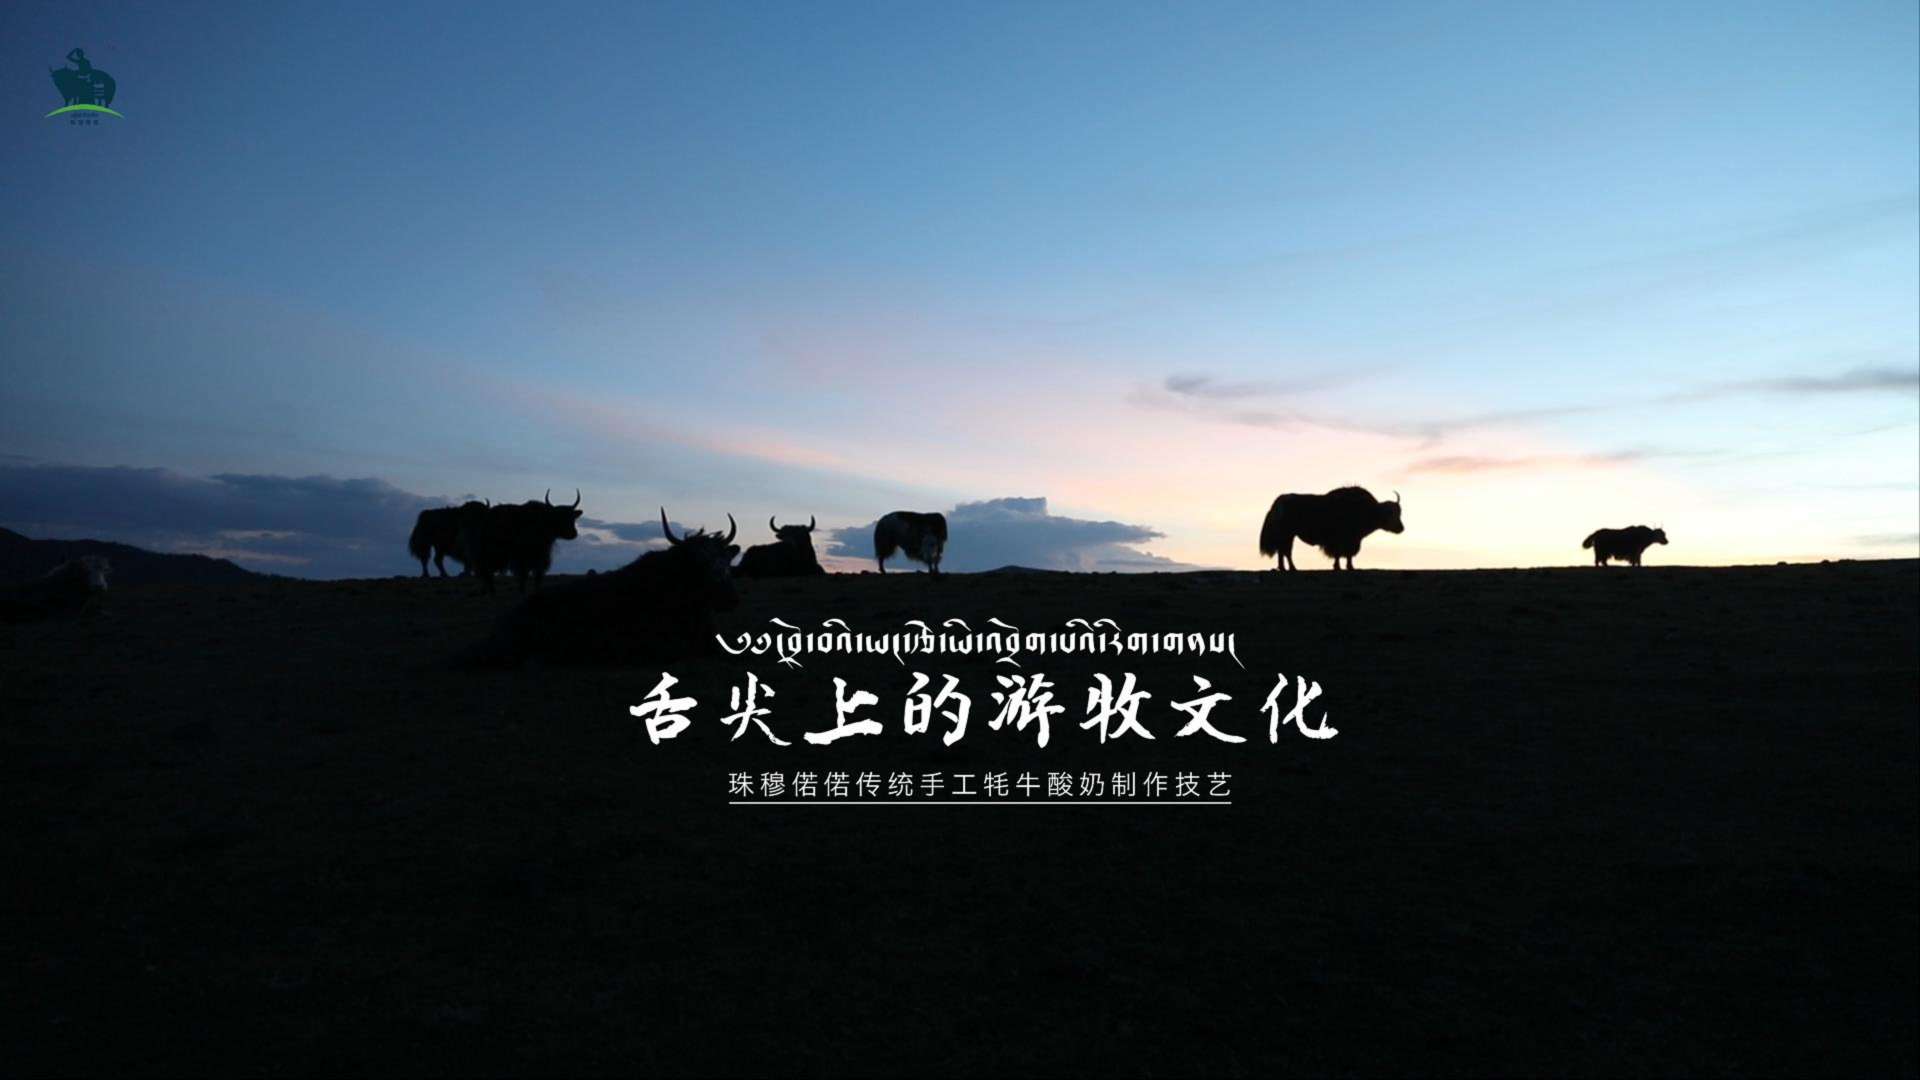 炉霍珠穆偌偌牧业【传统手工牦牛酸奶制作技艺】